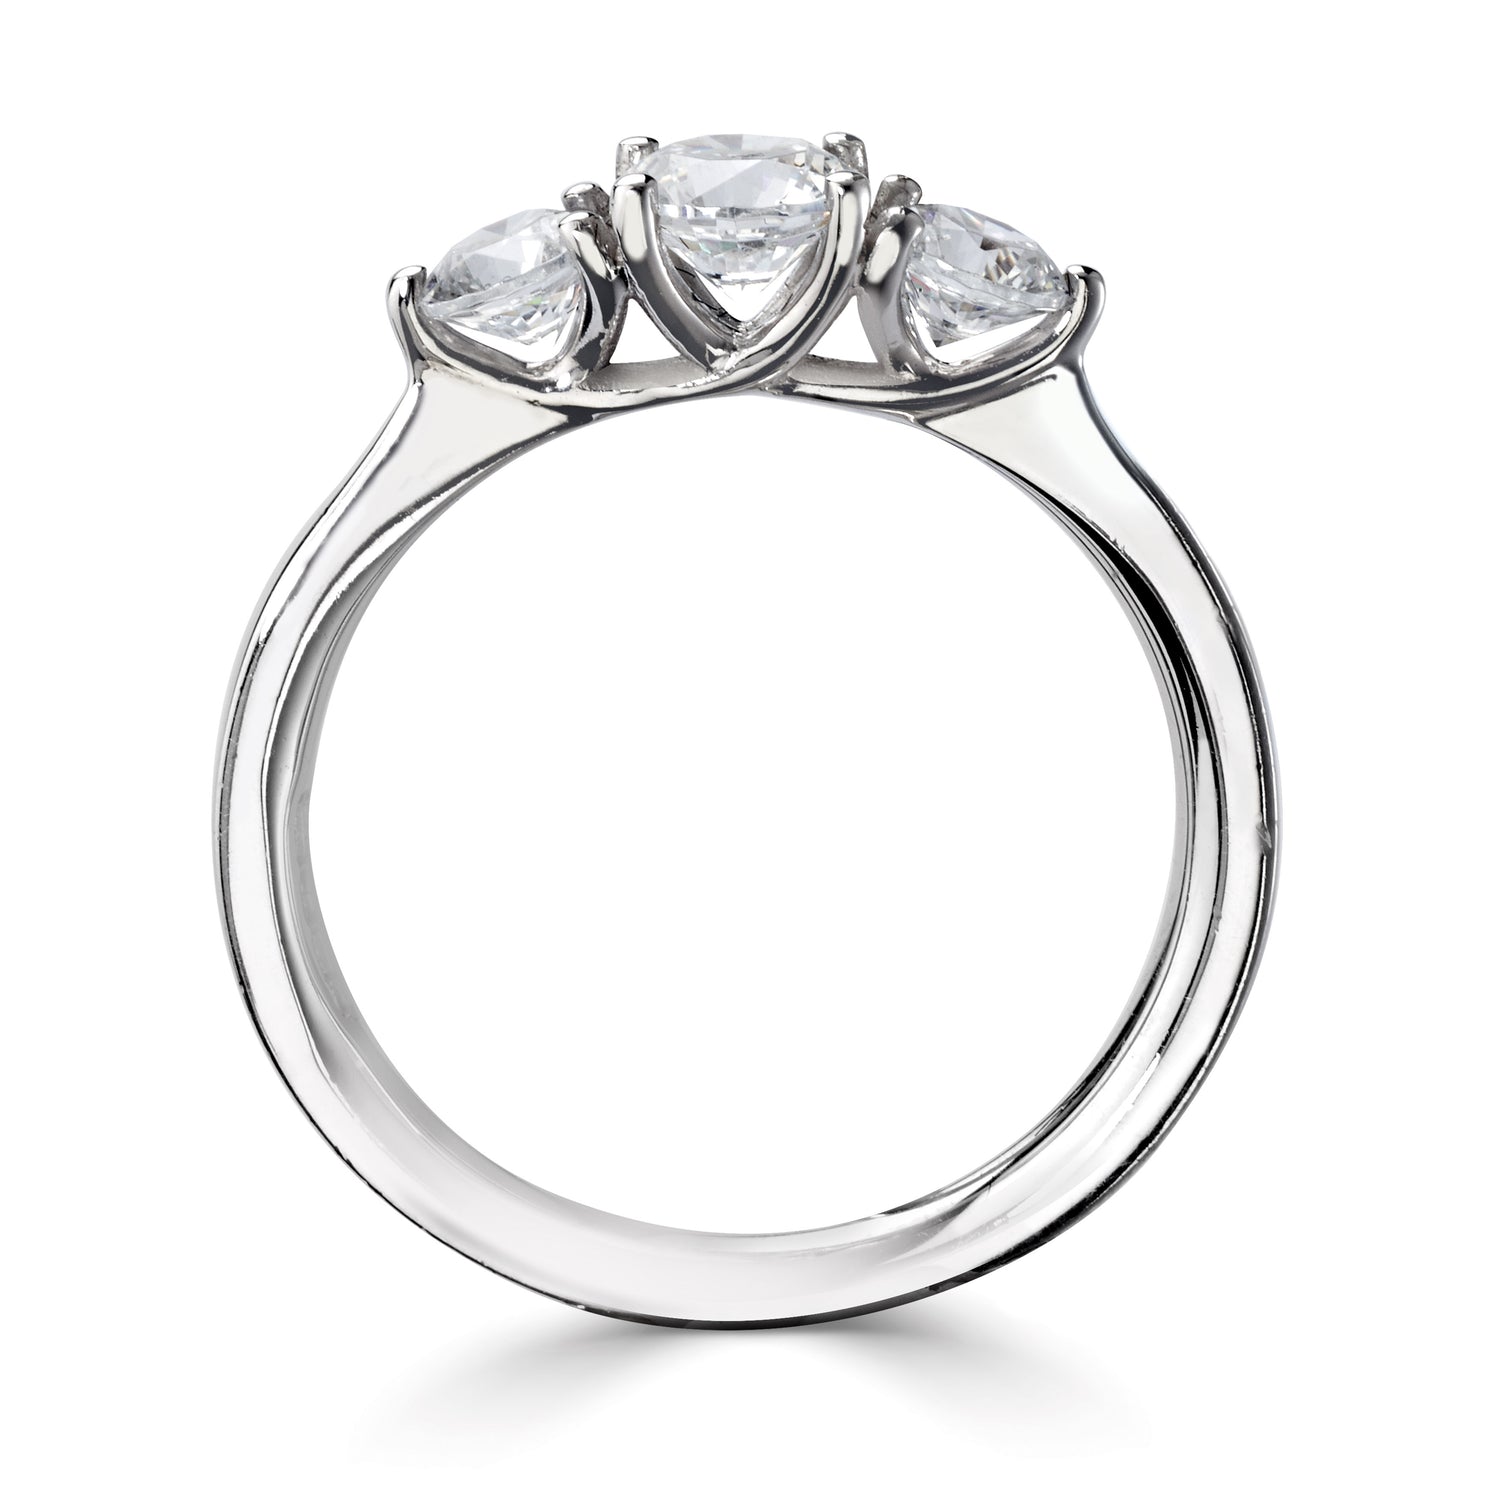 18CT White Gold Three Stone Diamond Ring - Robert Anthony Jewellers, Edinburgh